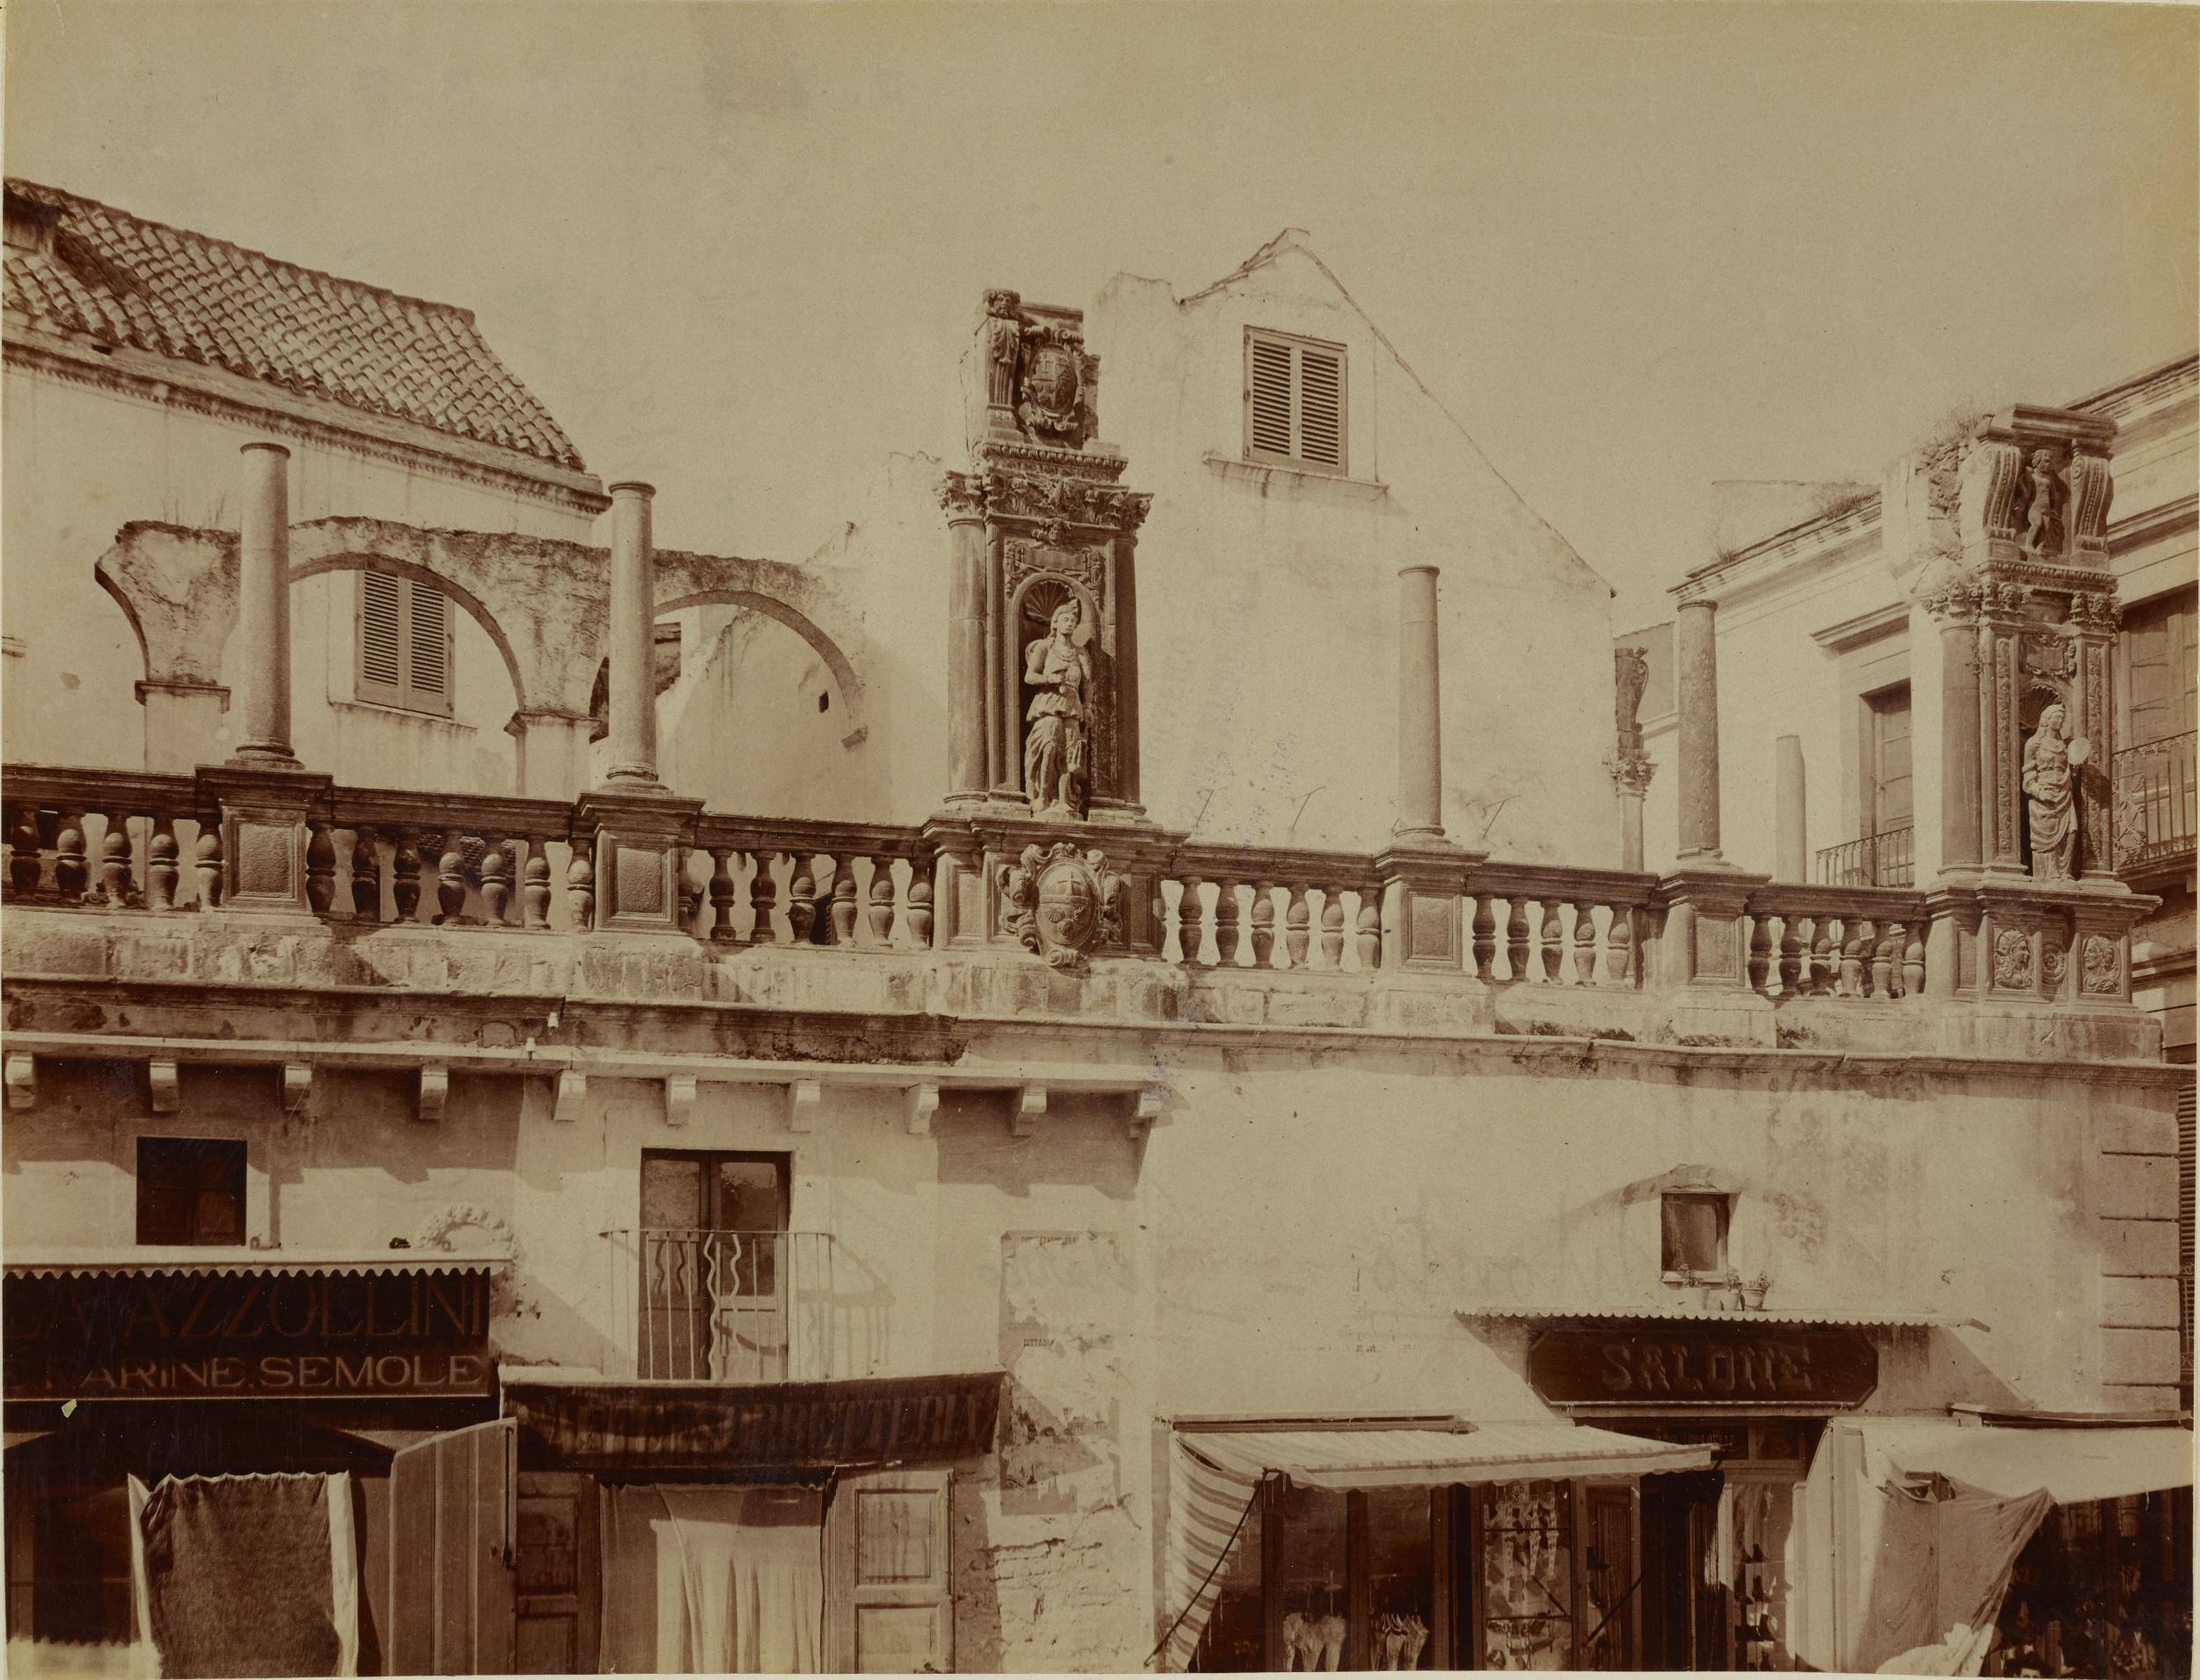 Fotografo non identificato, Bitonto - Palazzo Sylos-Calo', resti di loggia a colonne e pilastri con statue, 1891-1910, albumina/carta, MPI137913